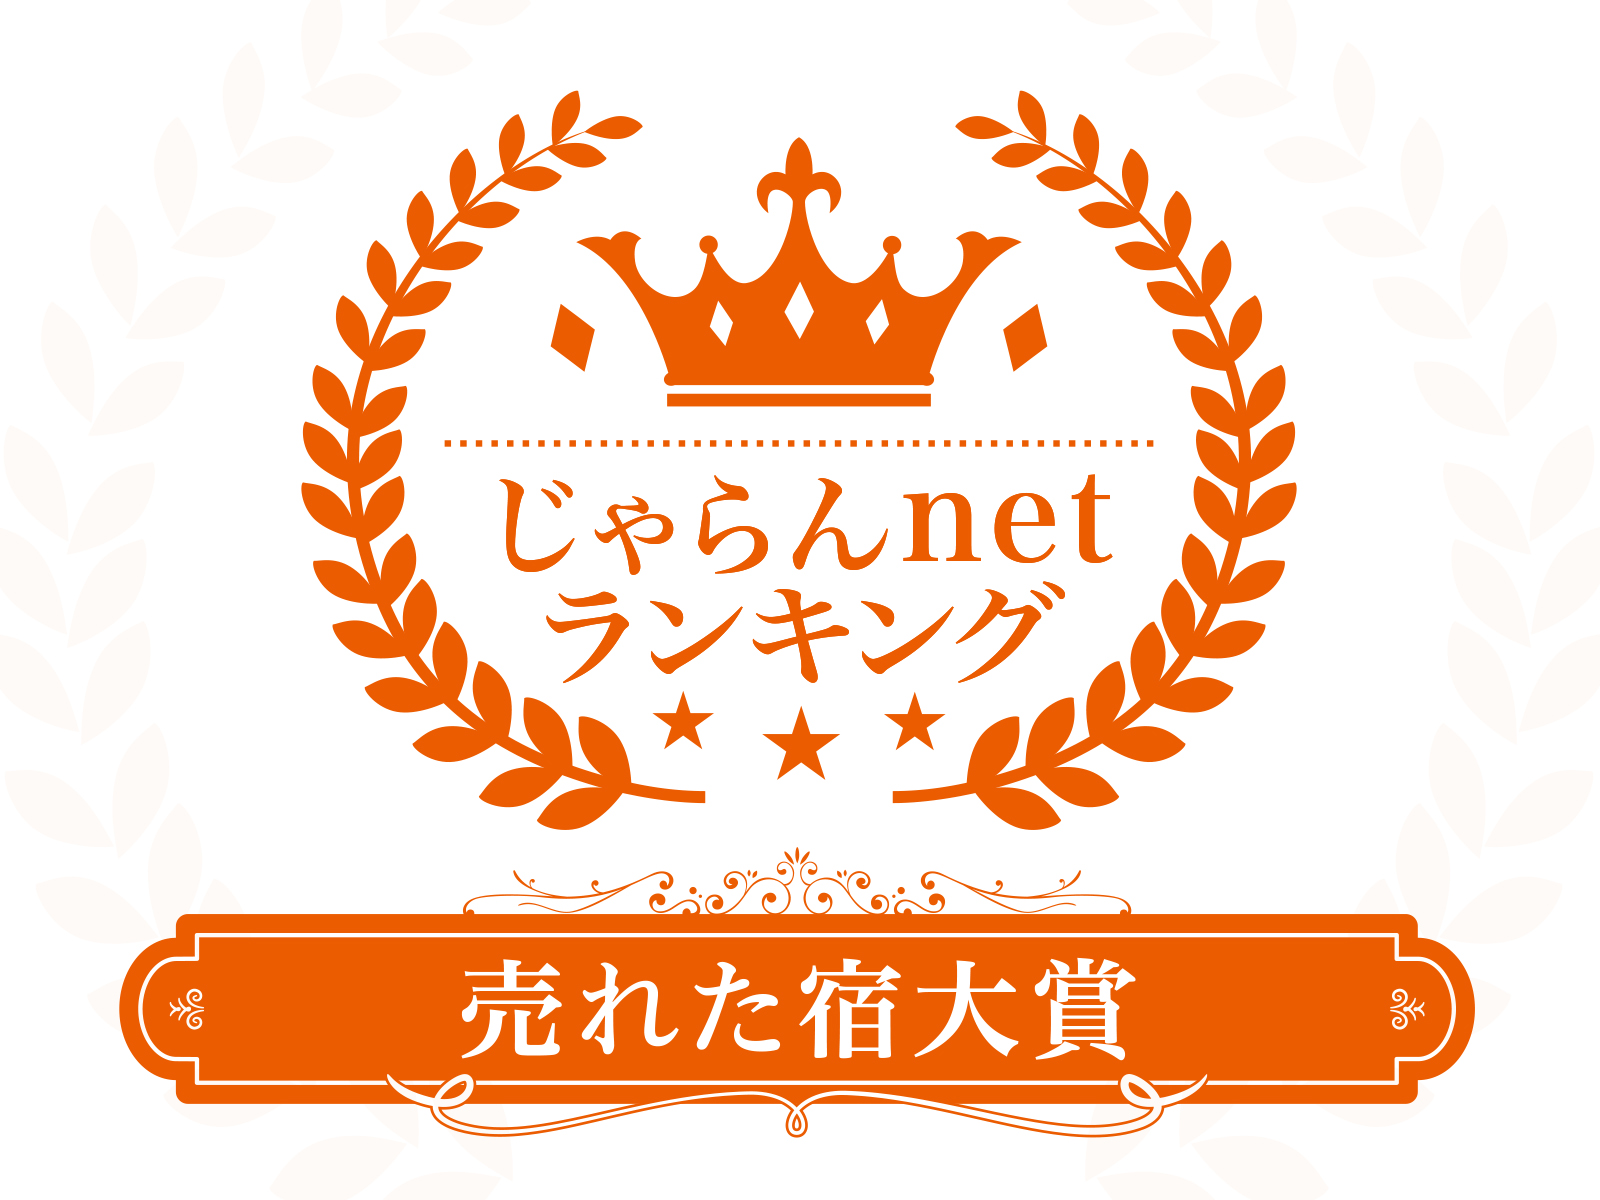 吟松、天テラスがじゃらんnetランキング2022(鹿児島県)を受賞致しました。